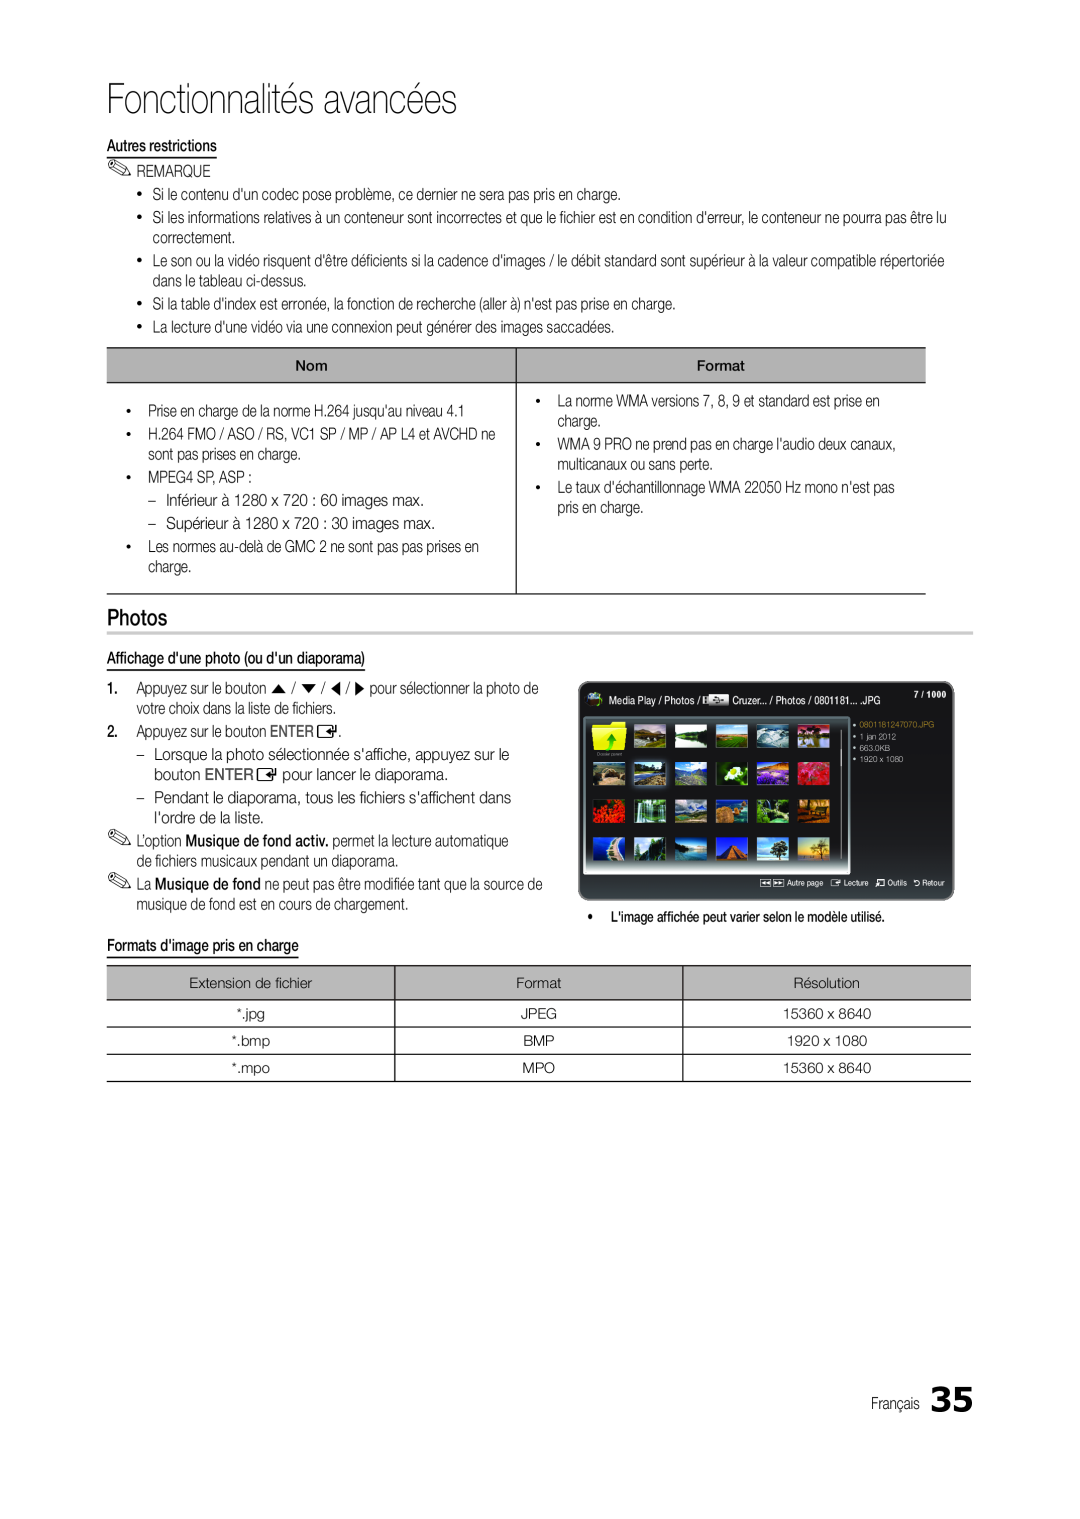 Samsung LT24C300EWZ/EN, LT19C300EW/EN, LT24C300EW/EN, LT27C370EW/EN manual Fonctionnalités avancées, Media Play / Photos 